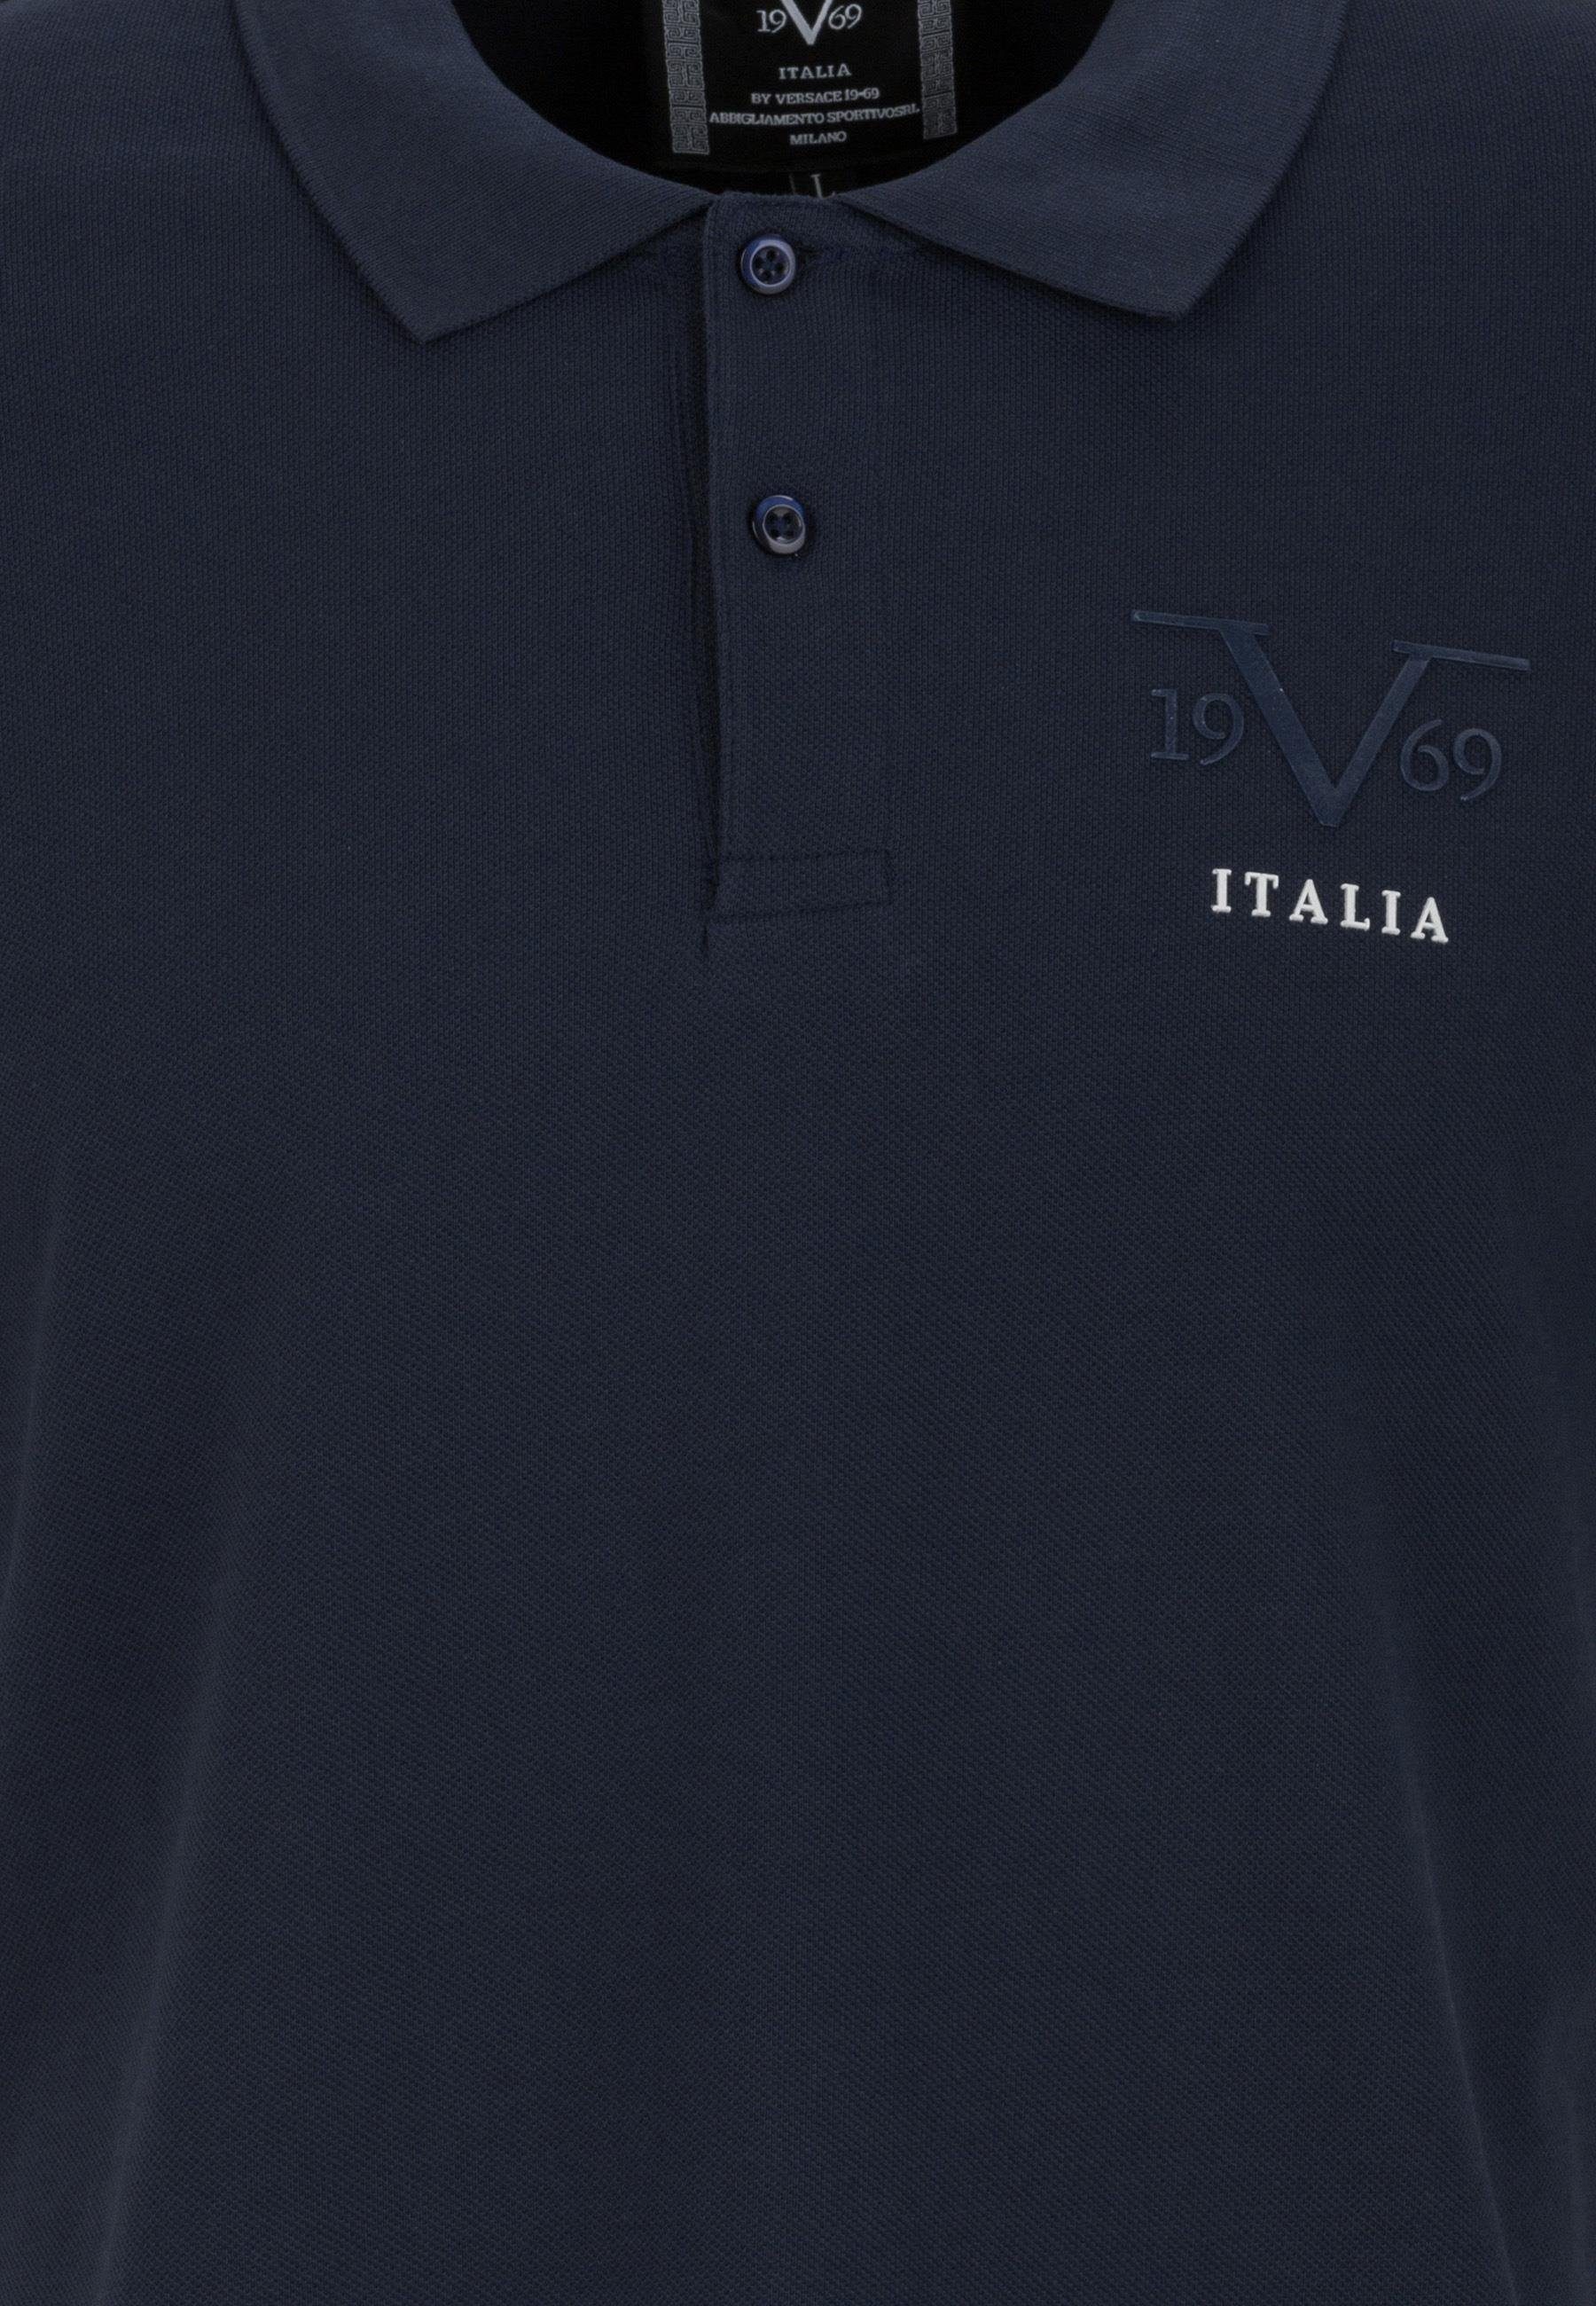 Versace Shirt Harry 19V69 T-Shirt Polo blau Italia by